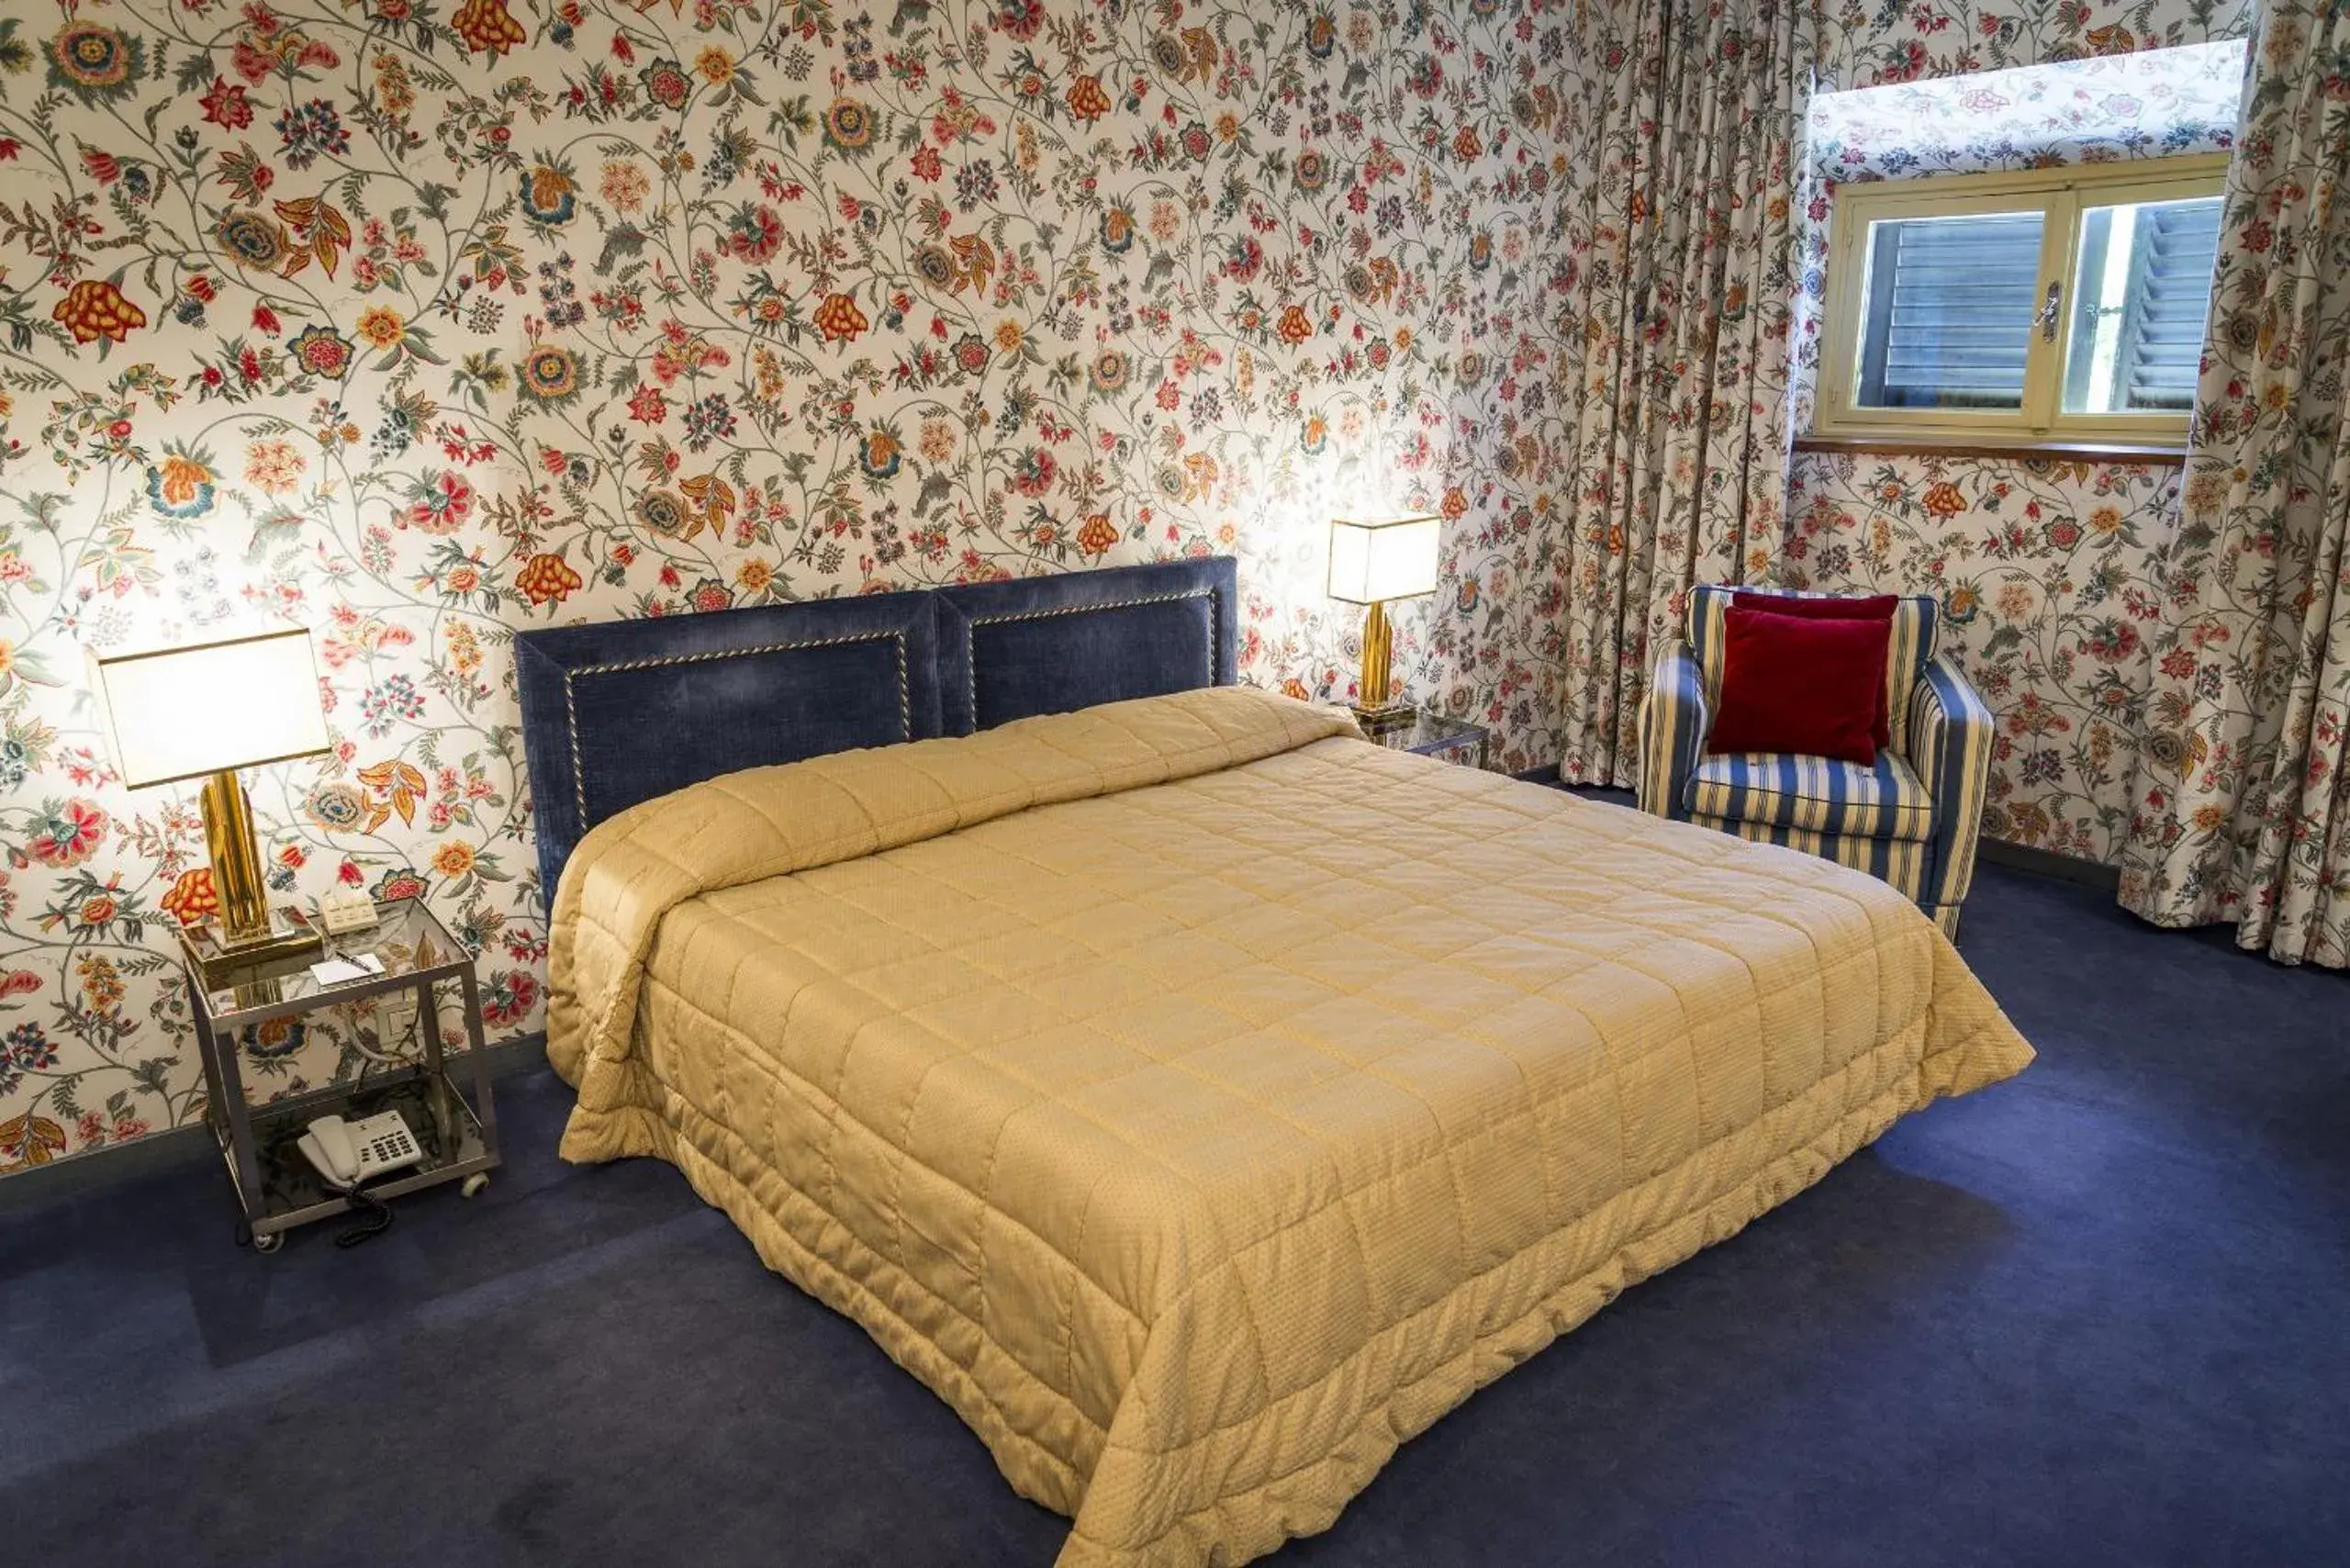 Bedroom, Room Photo in Hotel Villa La Principessa